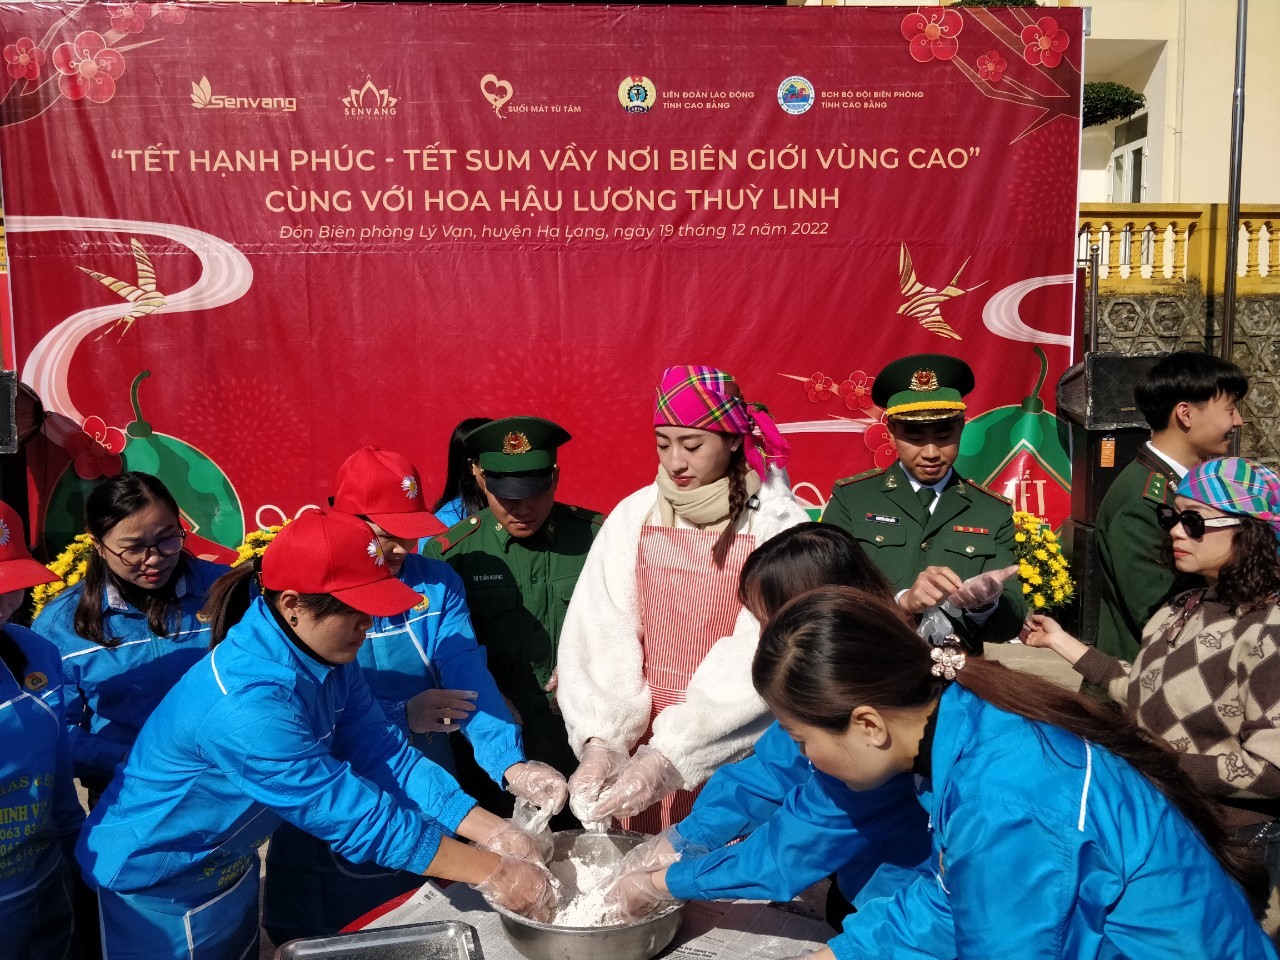 Cán bộ, công nhân viên LĐLĐ tỉnh Cao Bằng cùng Hoa hậu Lương Thuỳ Linh chung tay làm bánh khảo.